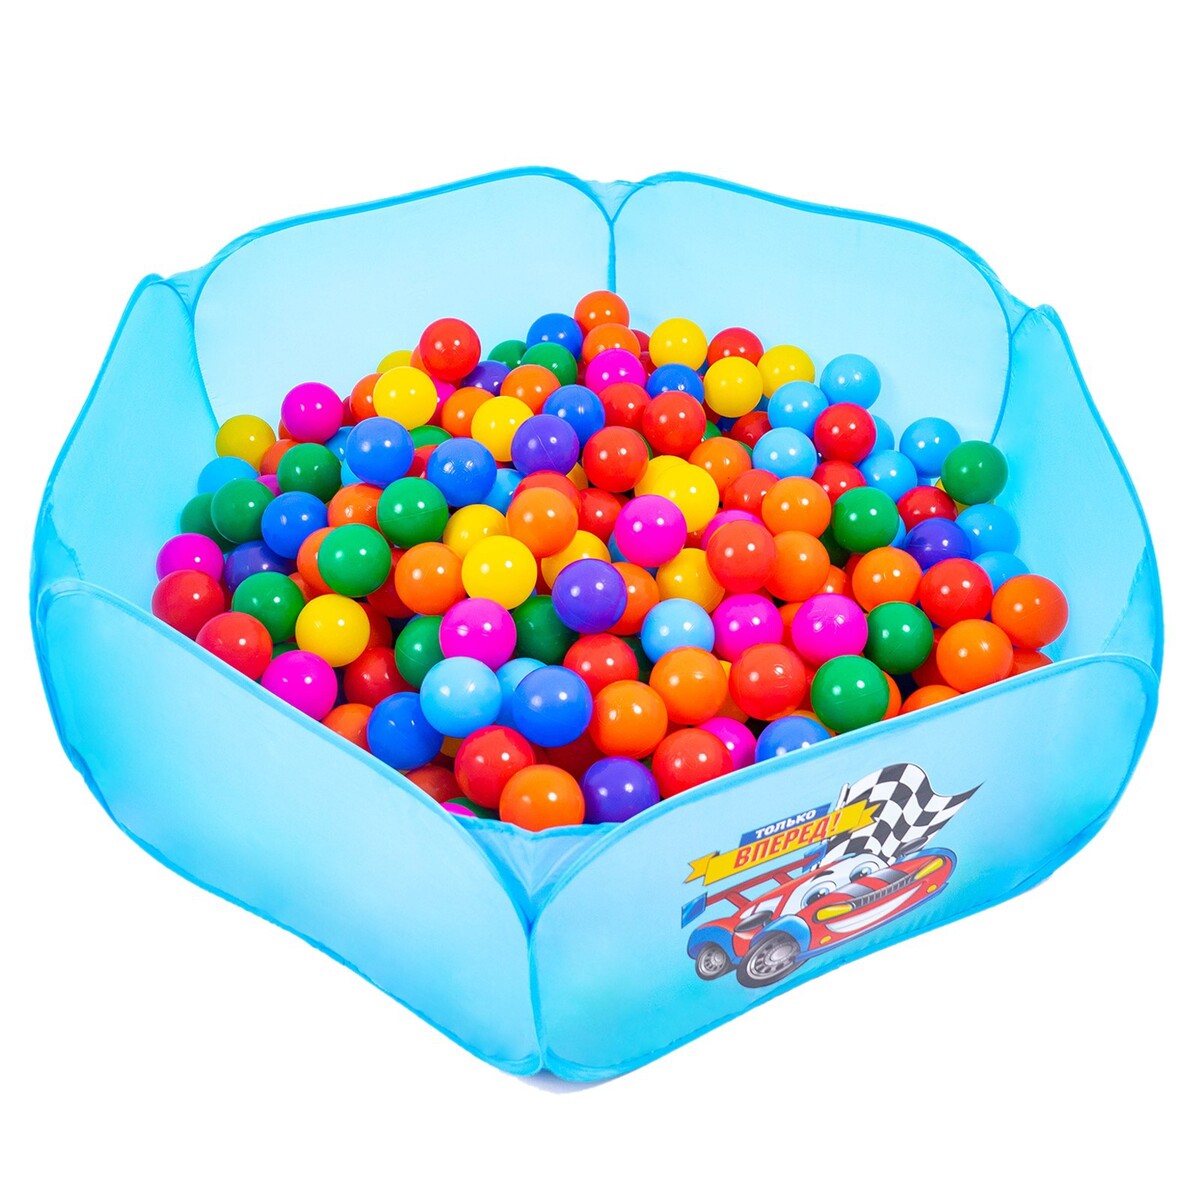 Шарики для сухого бассейна с рисунком, диаметр шара 7,5 см, набор 30 штук, разноцветные шарики для сухого бассейна соломон диаметр 5 см 150 шт